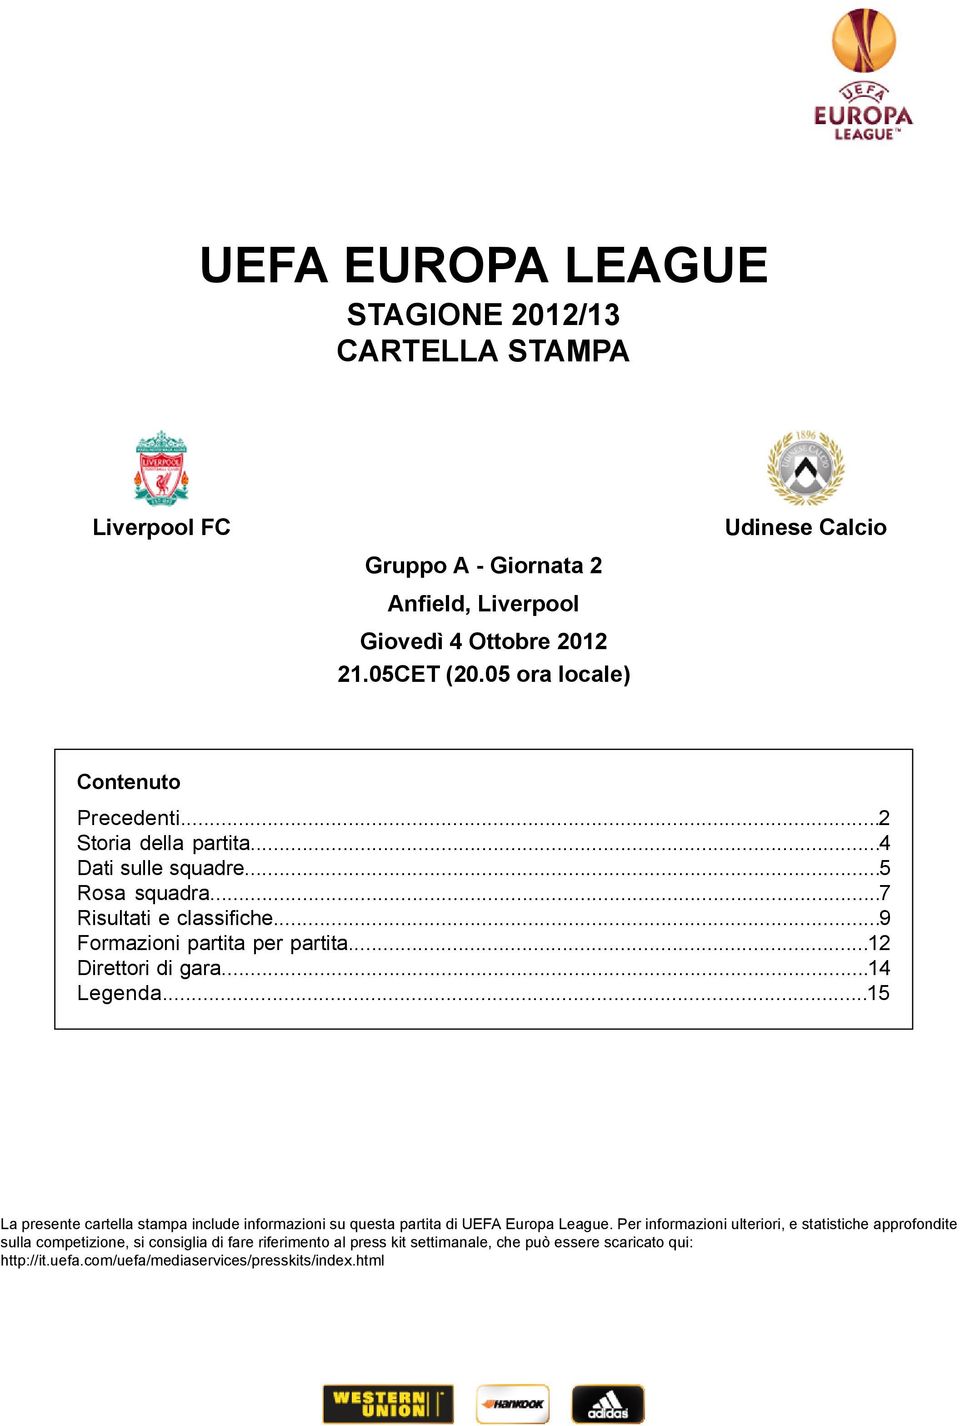 .. La presente cartella stampa include informazioni su questa partita di UEFA Europa League.